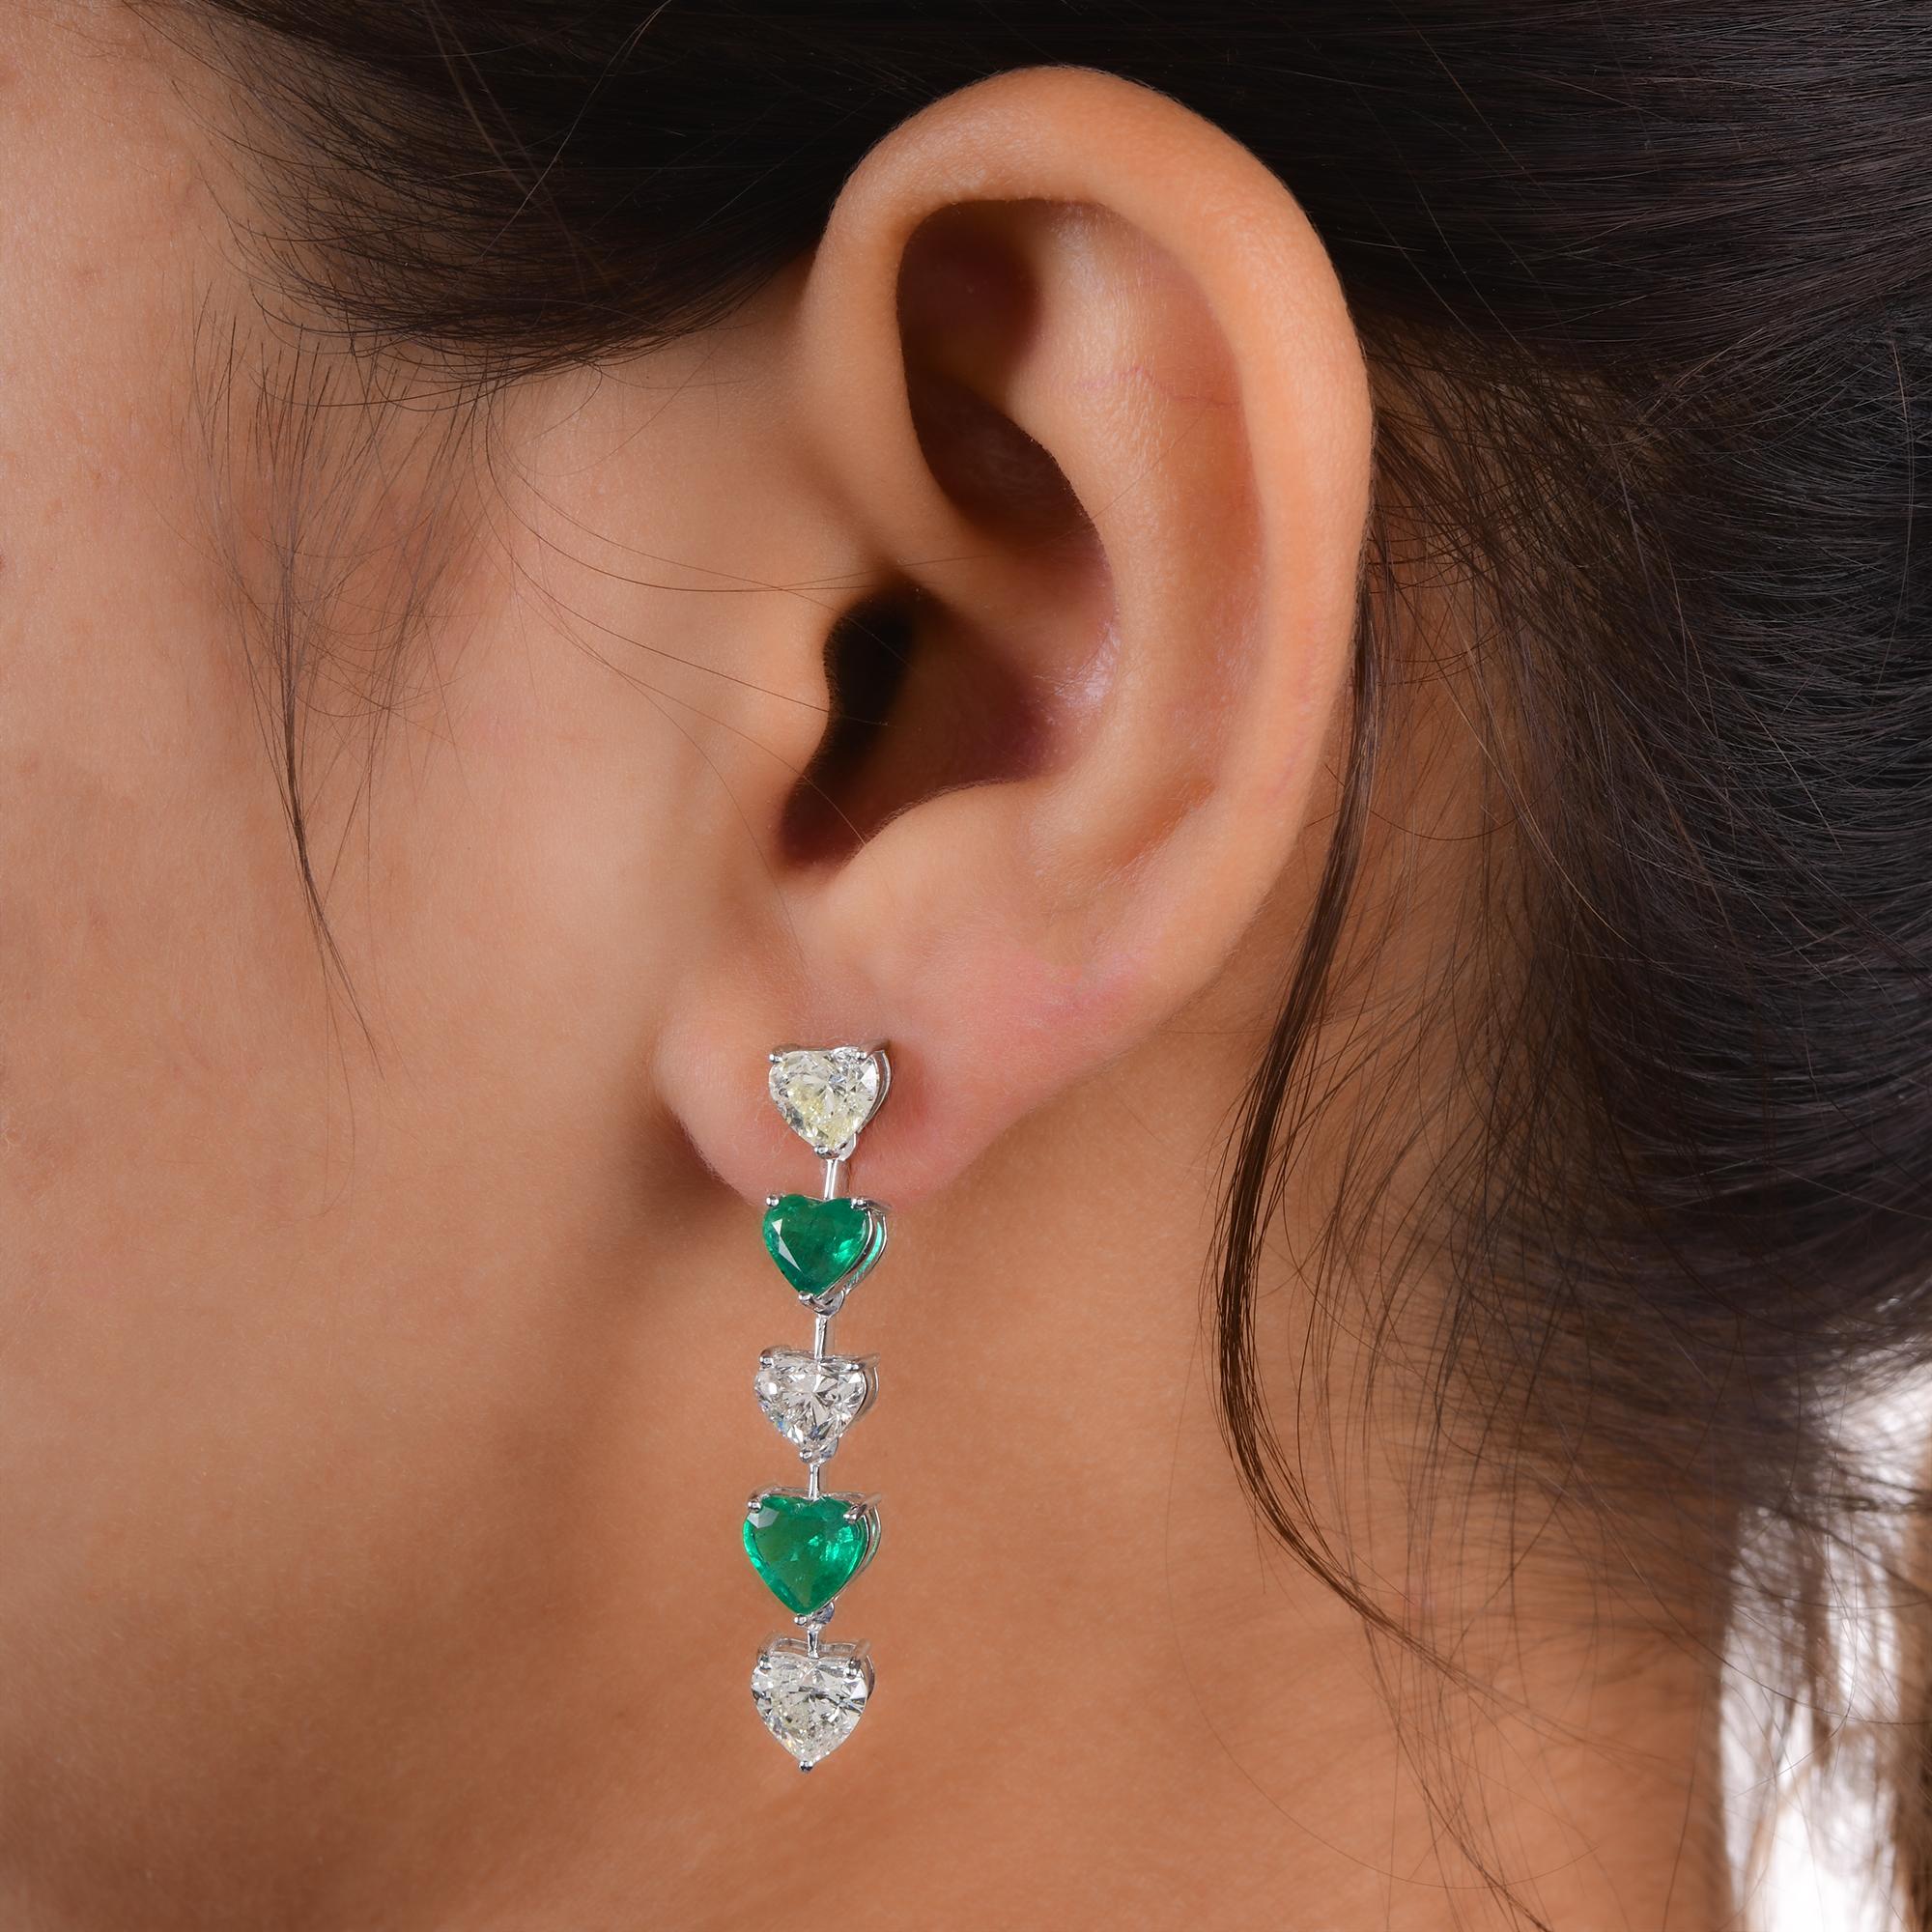 Modern Heart Zambian Emerald Gemstone Diamond Dangle Earrings 18 Kt White Gold Jewelry For Sale